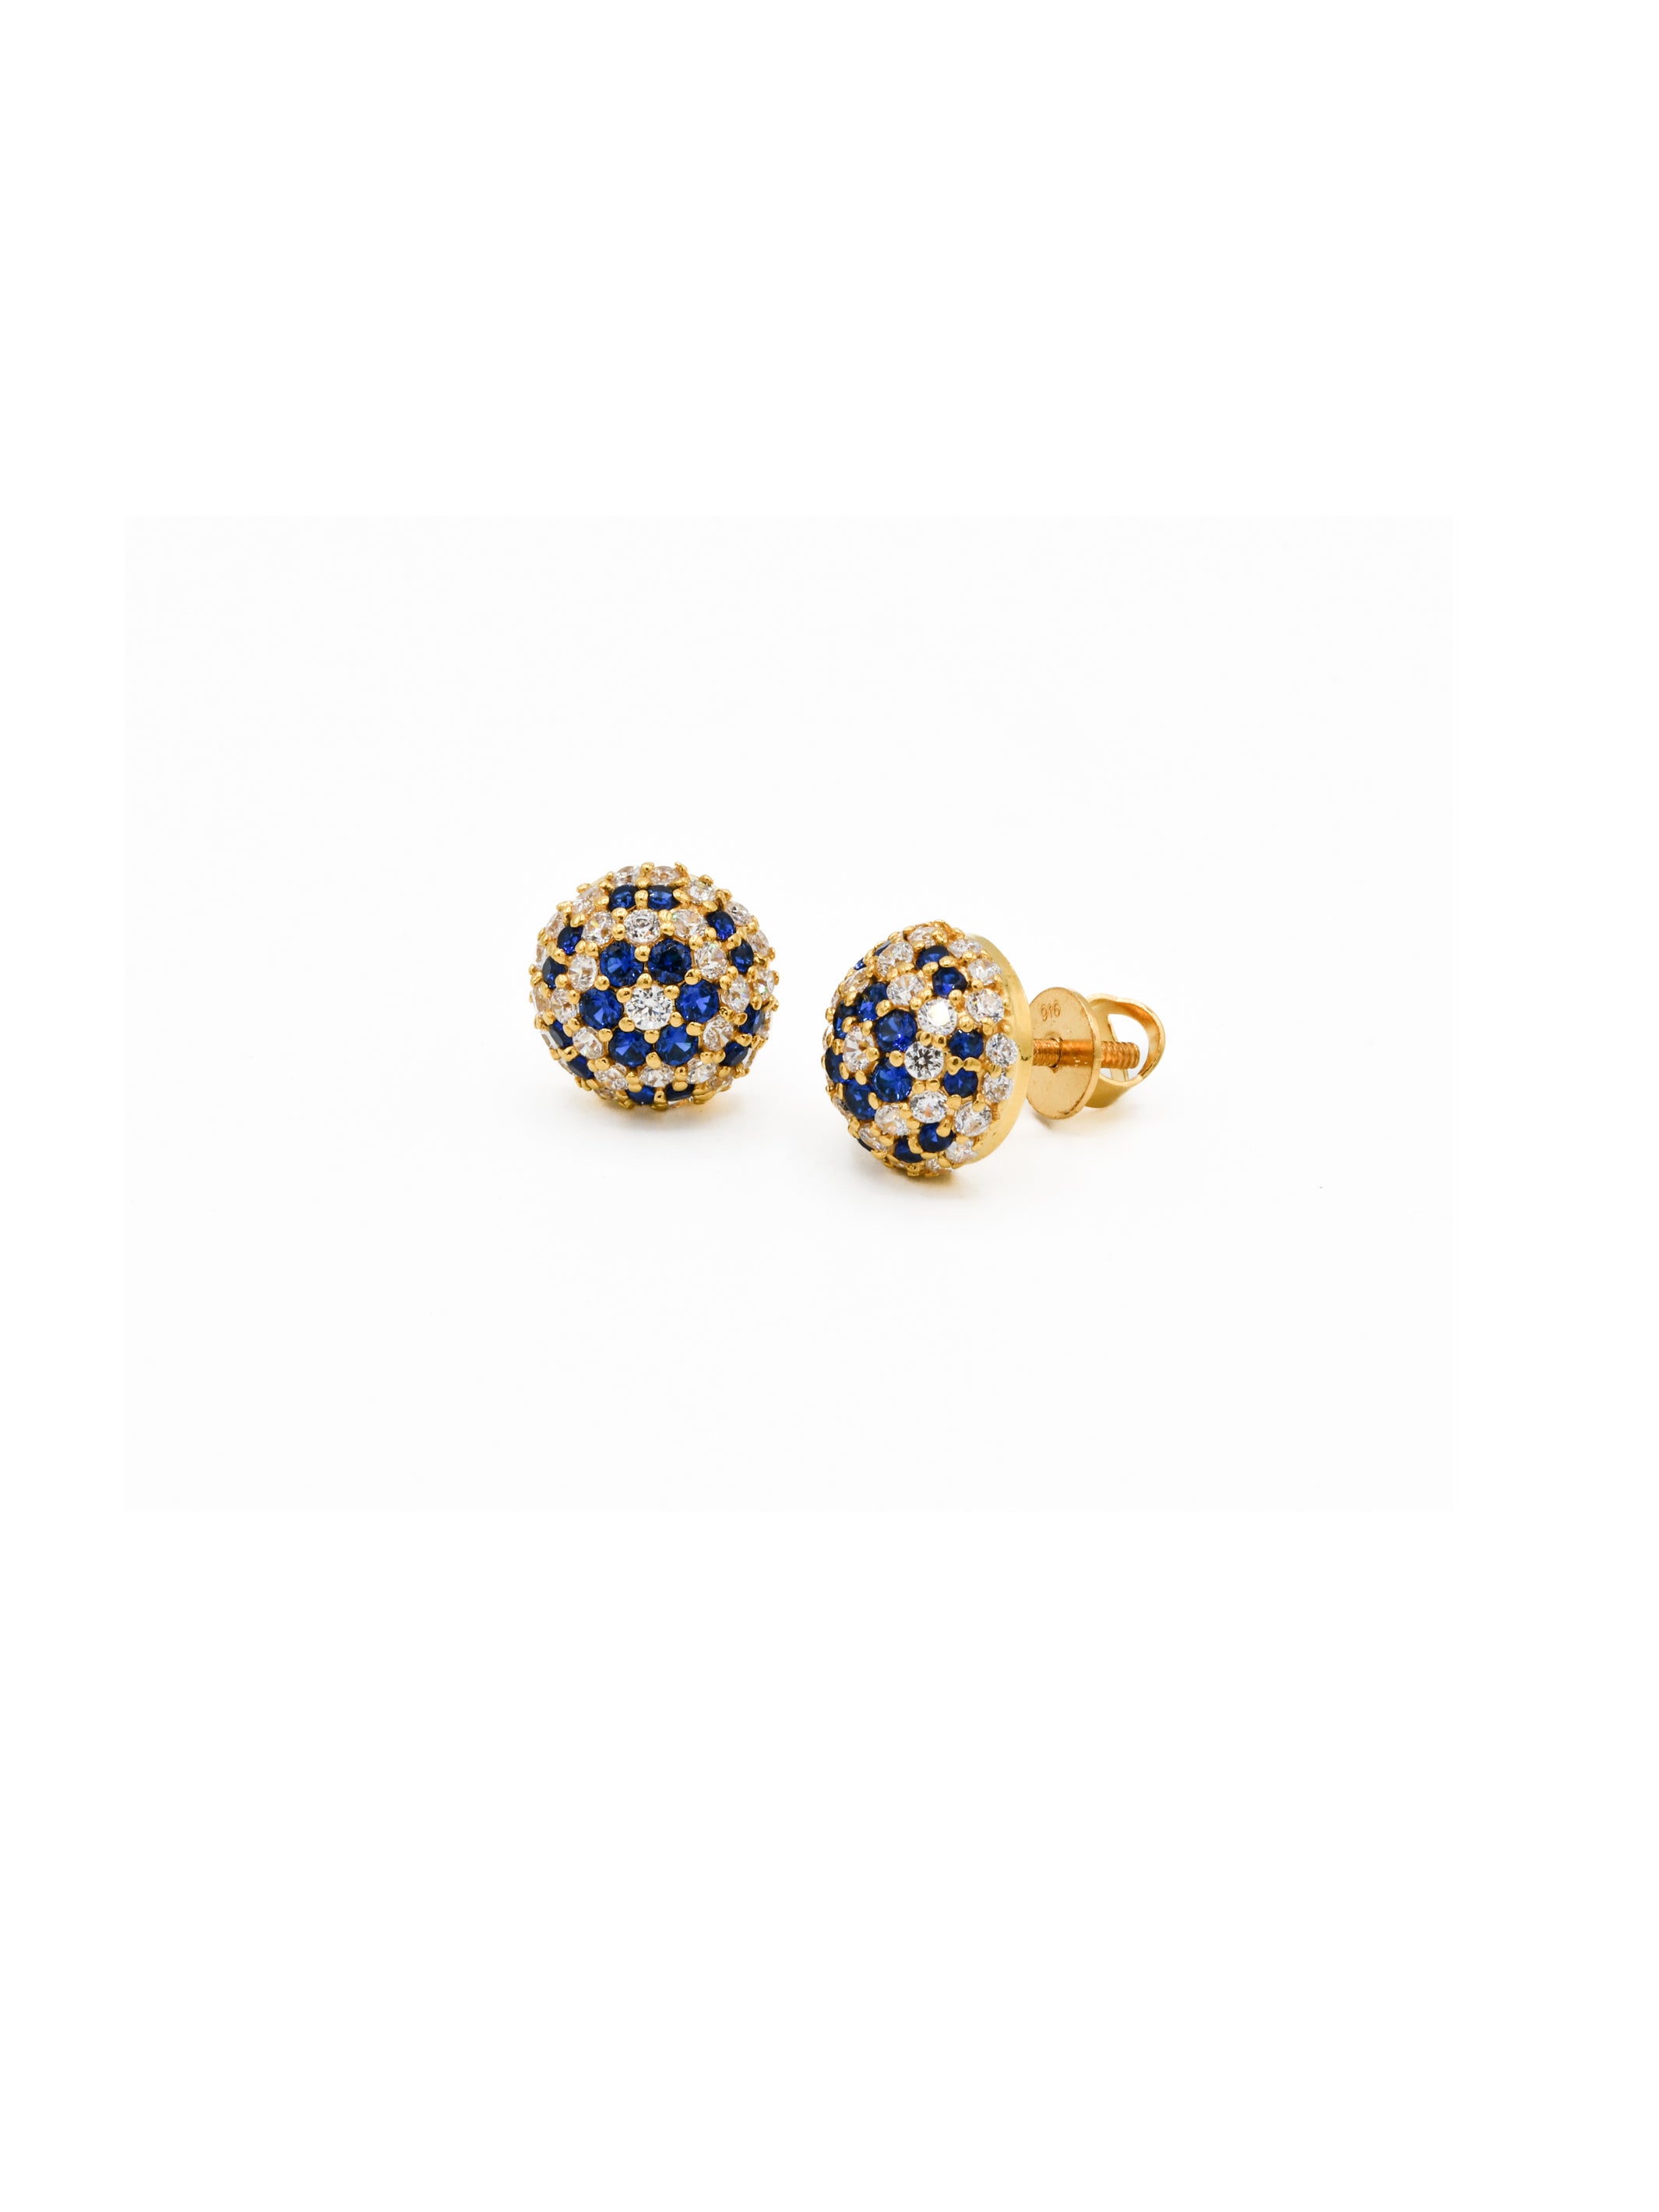 22ct Gold Blue CZ Stud Earrings - Roop Darshan